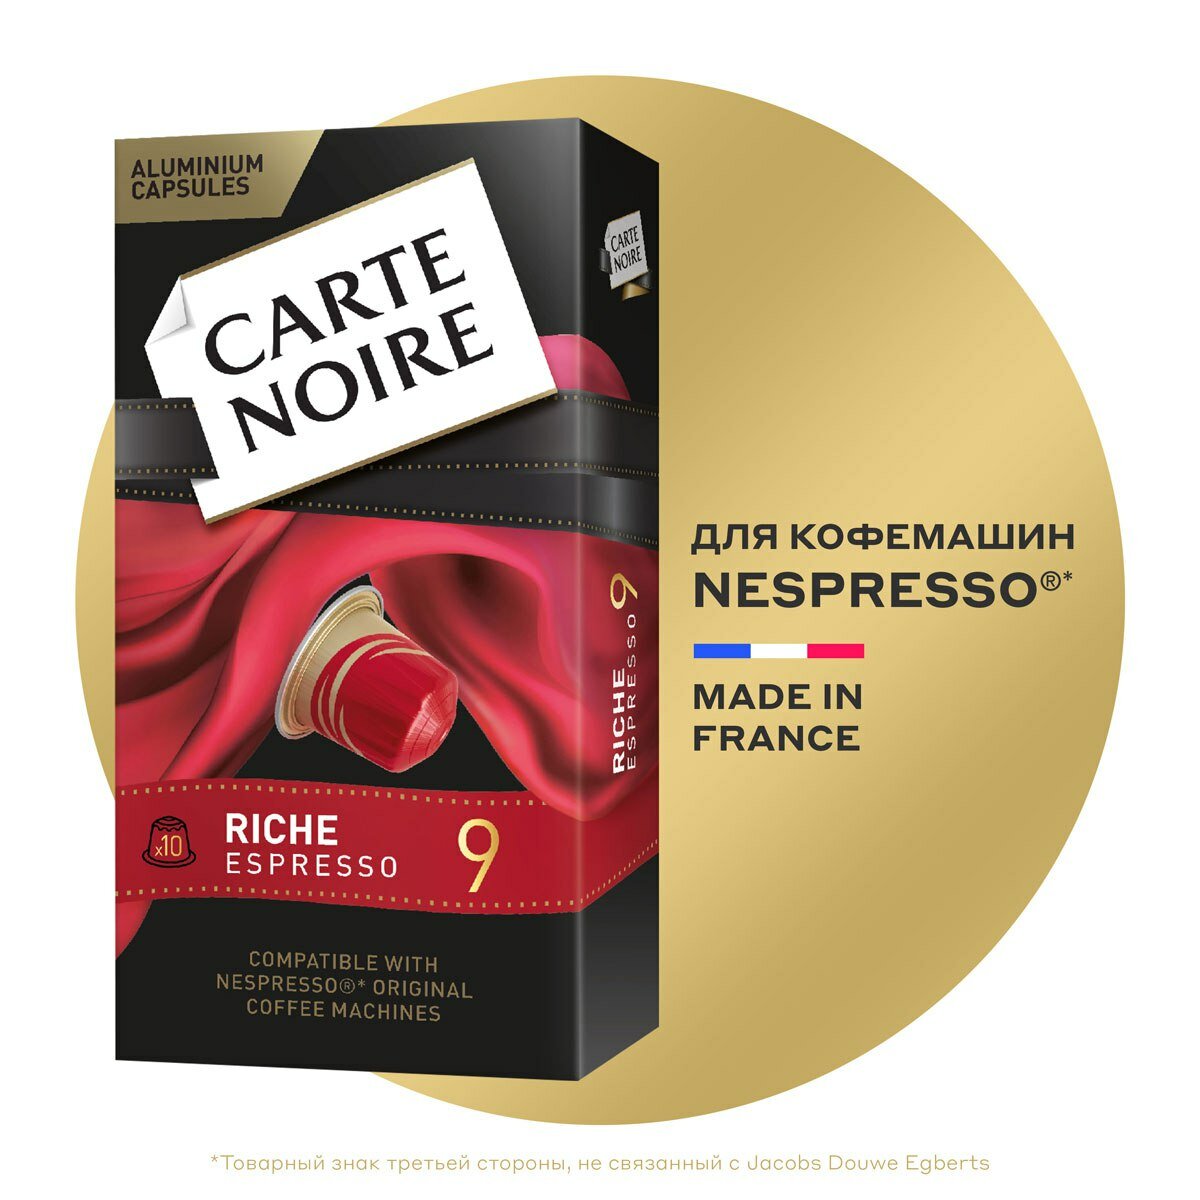 Кофе в капсулах Carte Noire Rich Espresso 9 для системы Nespresso, 10 шт, 52 г - фото №1